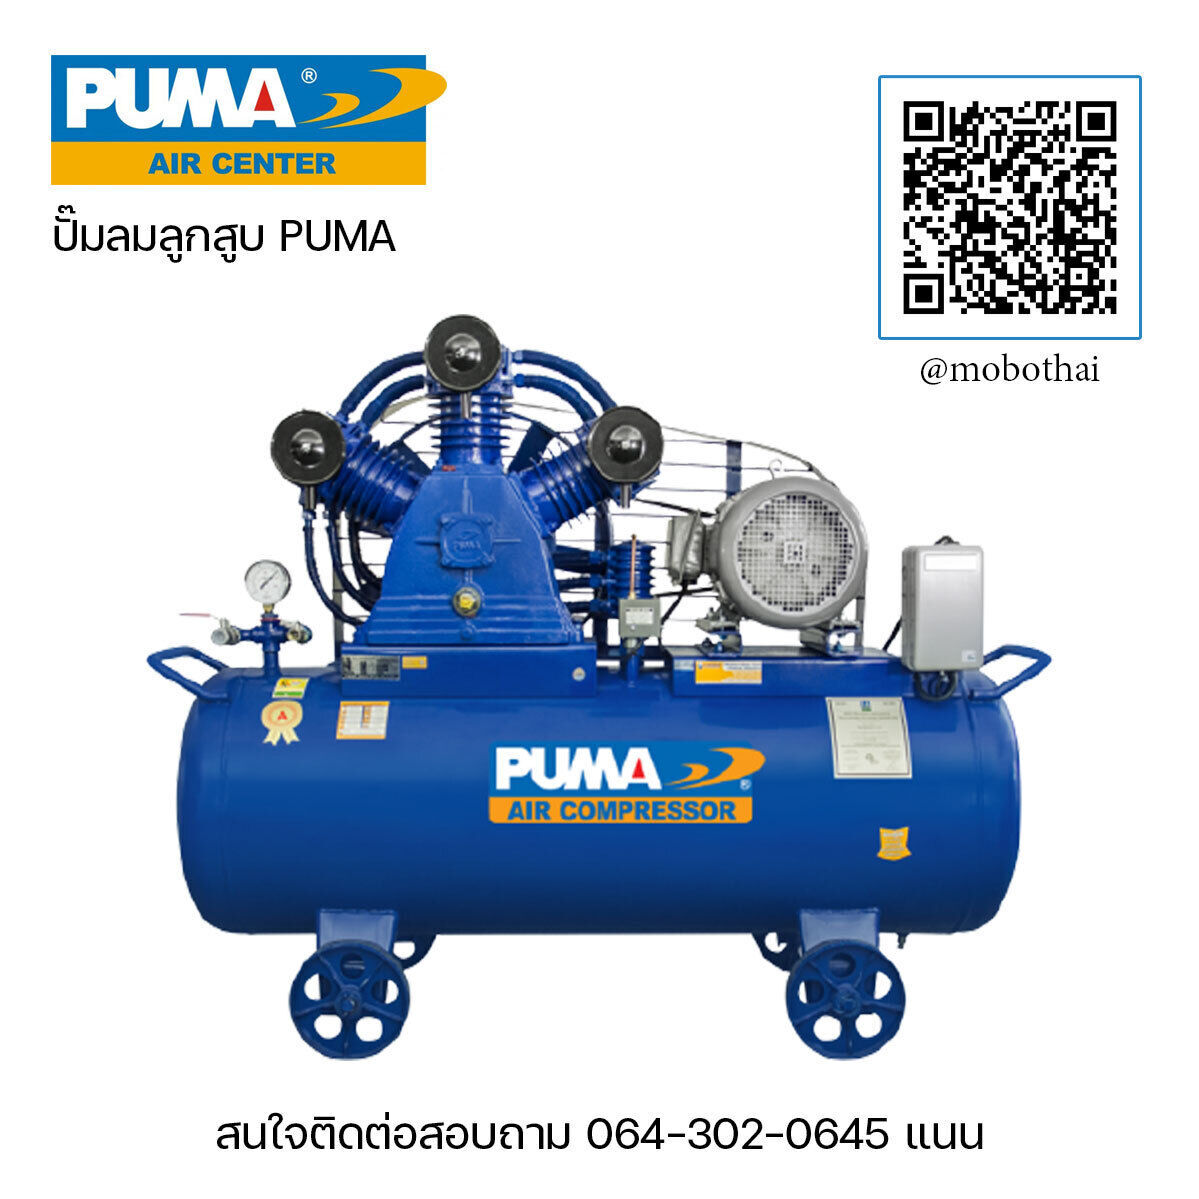 จำหน่ายปั๊มลมลูกสูบ puma air compressor ปั๊มลมพูม่า-อะไหล่ปั๊มลมพูม่า เริ่มต้นที่ขนาด 1/4 แรงม้า ถึง 15 แรงม้า  มีของพร้อมจัดส่ง รับประกันสินค้า 1 ปีส่งฟรี กรุงเทพฯ-ปริมณฑล